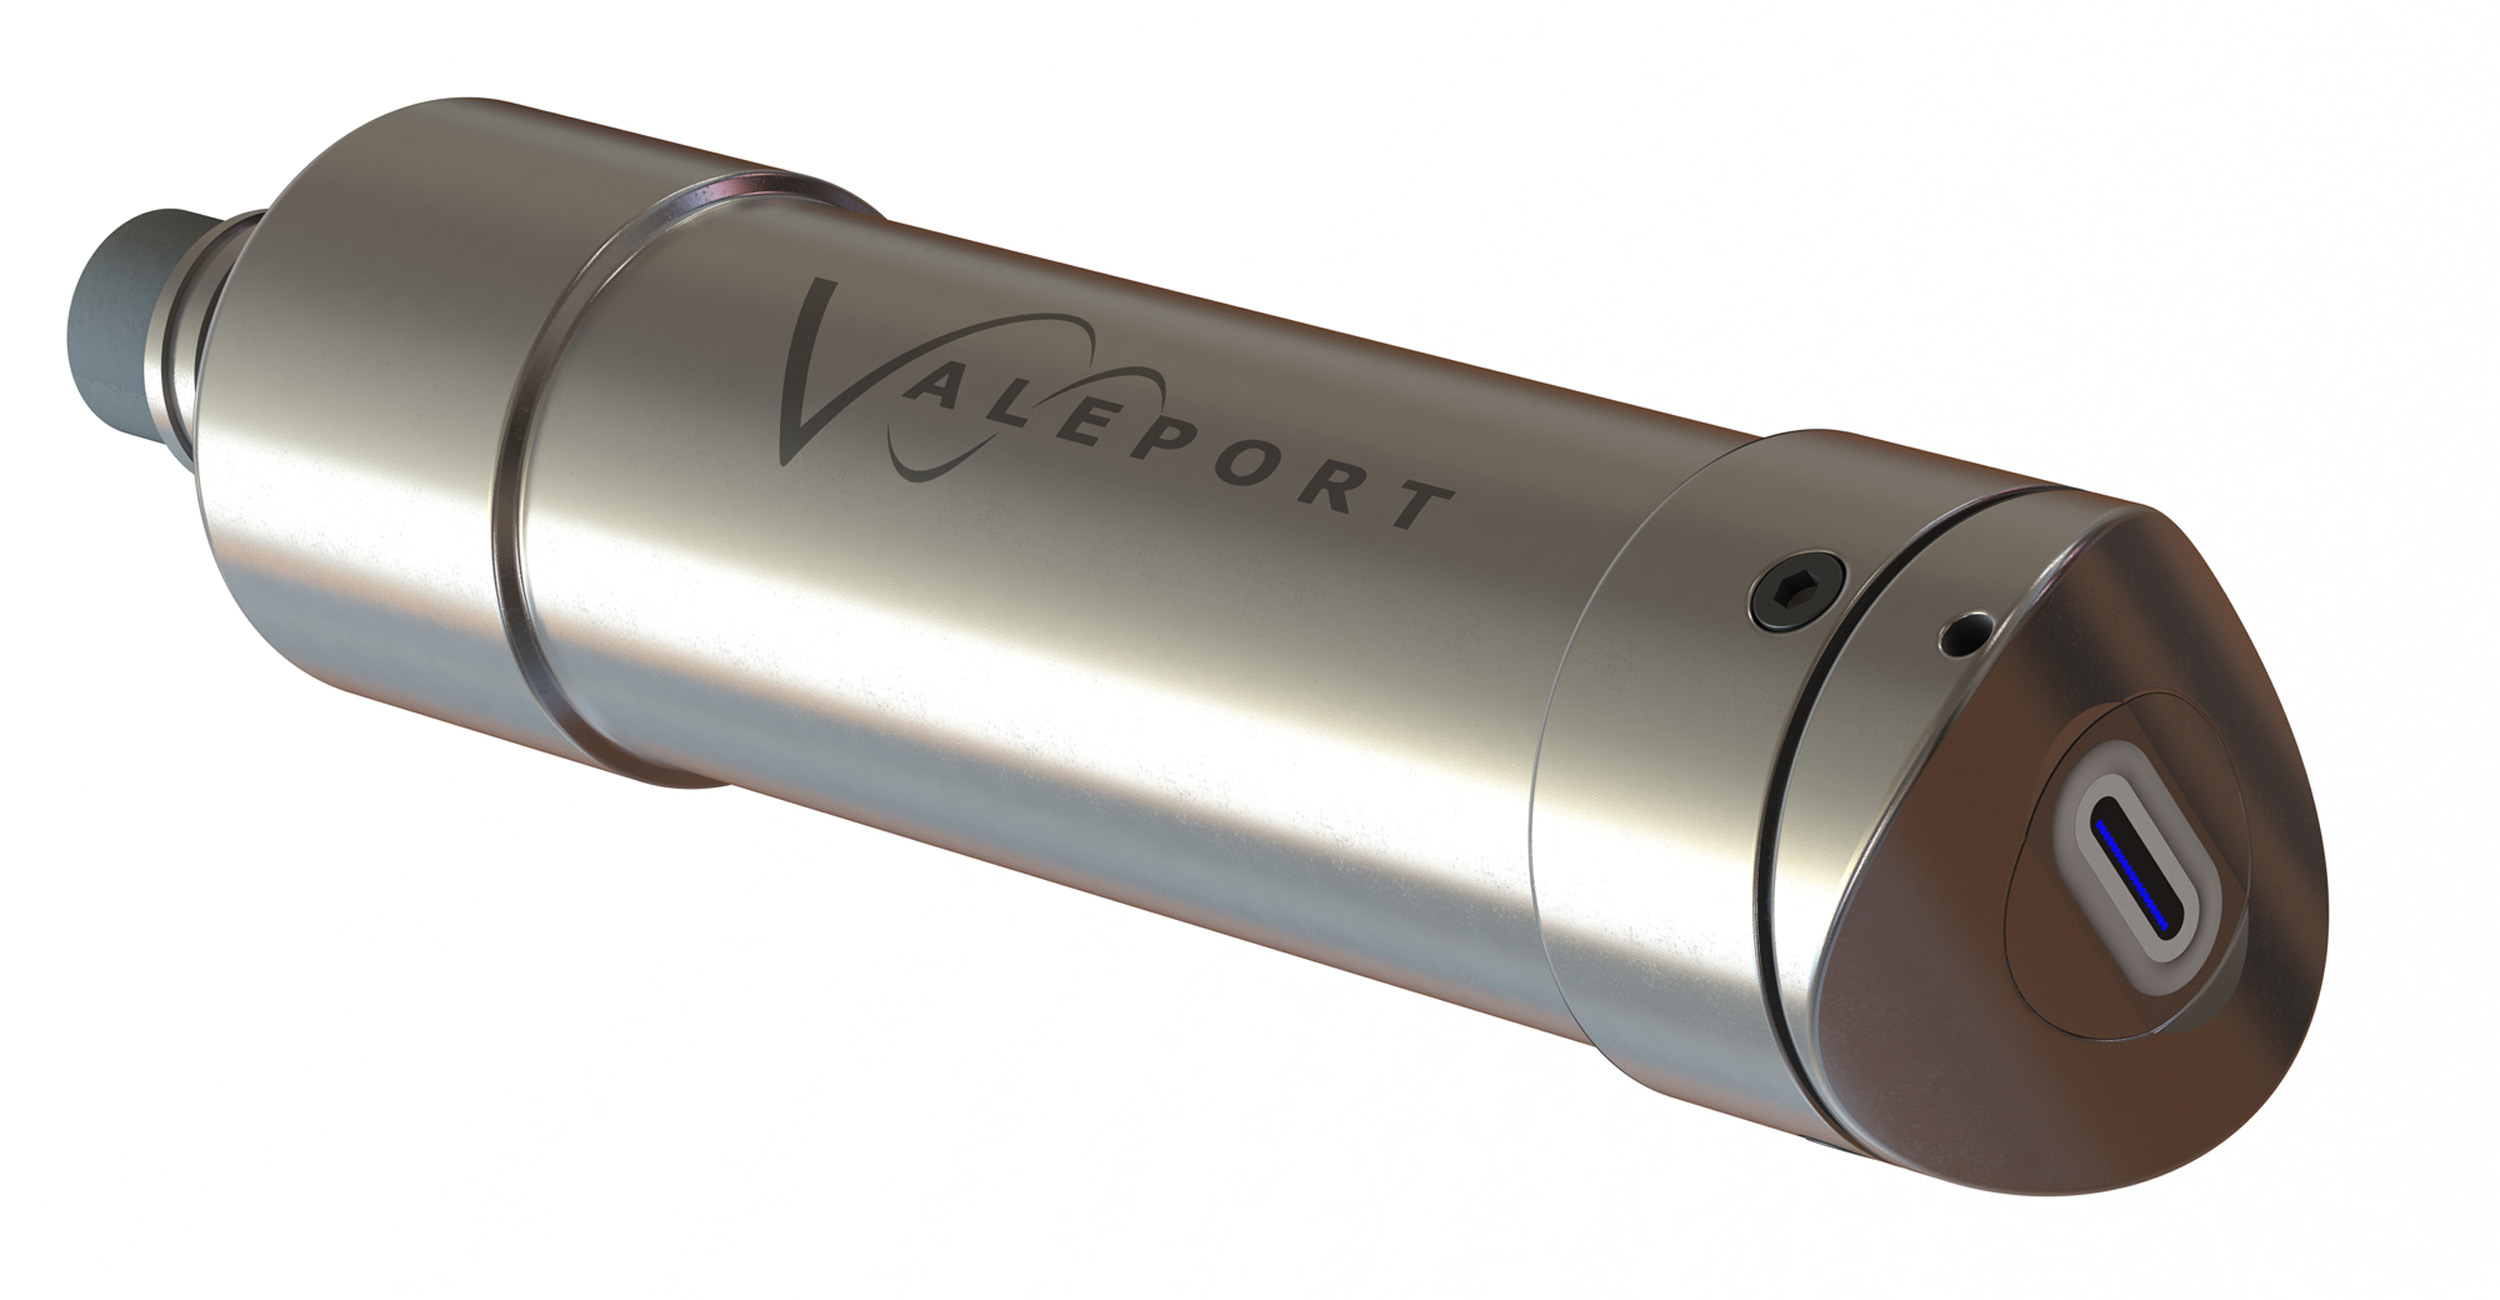 Valeport_Fluorometer_Launch.jpg